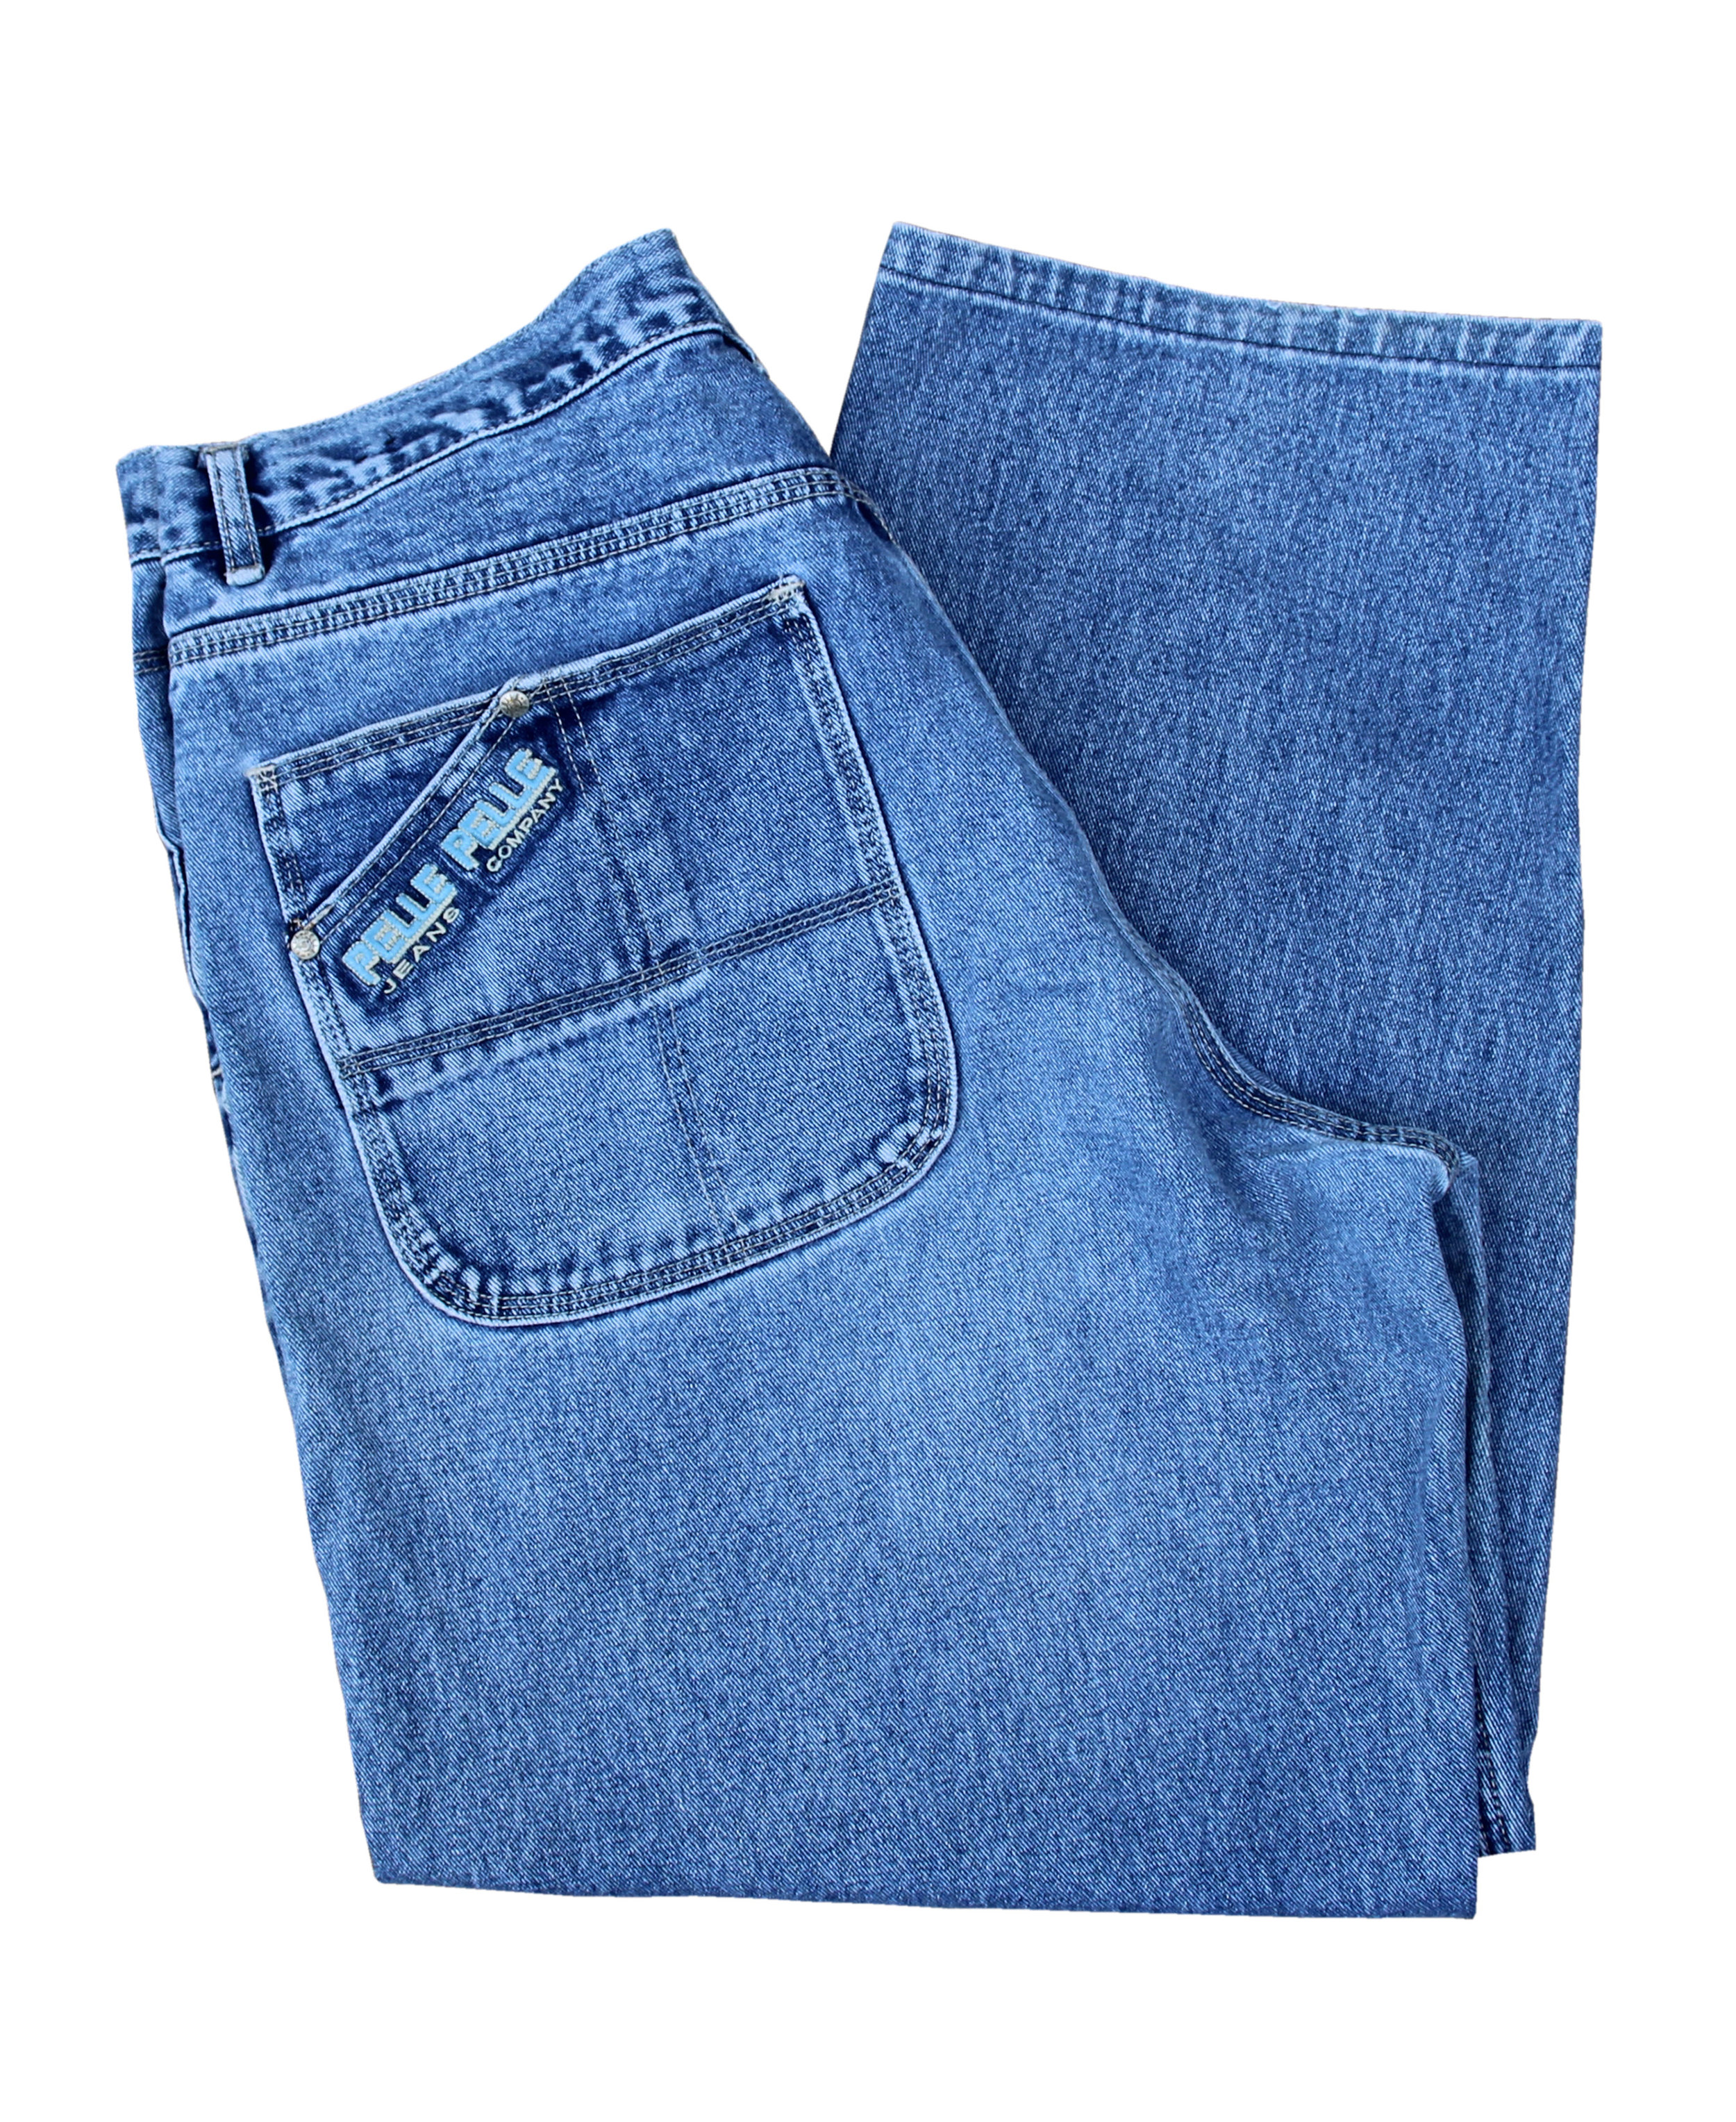 Vintage Pelle Pelle Carpenter Jeans (Size 38 x 30) — Roots